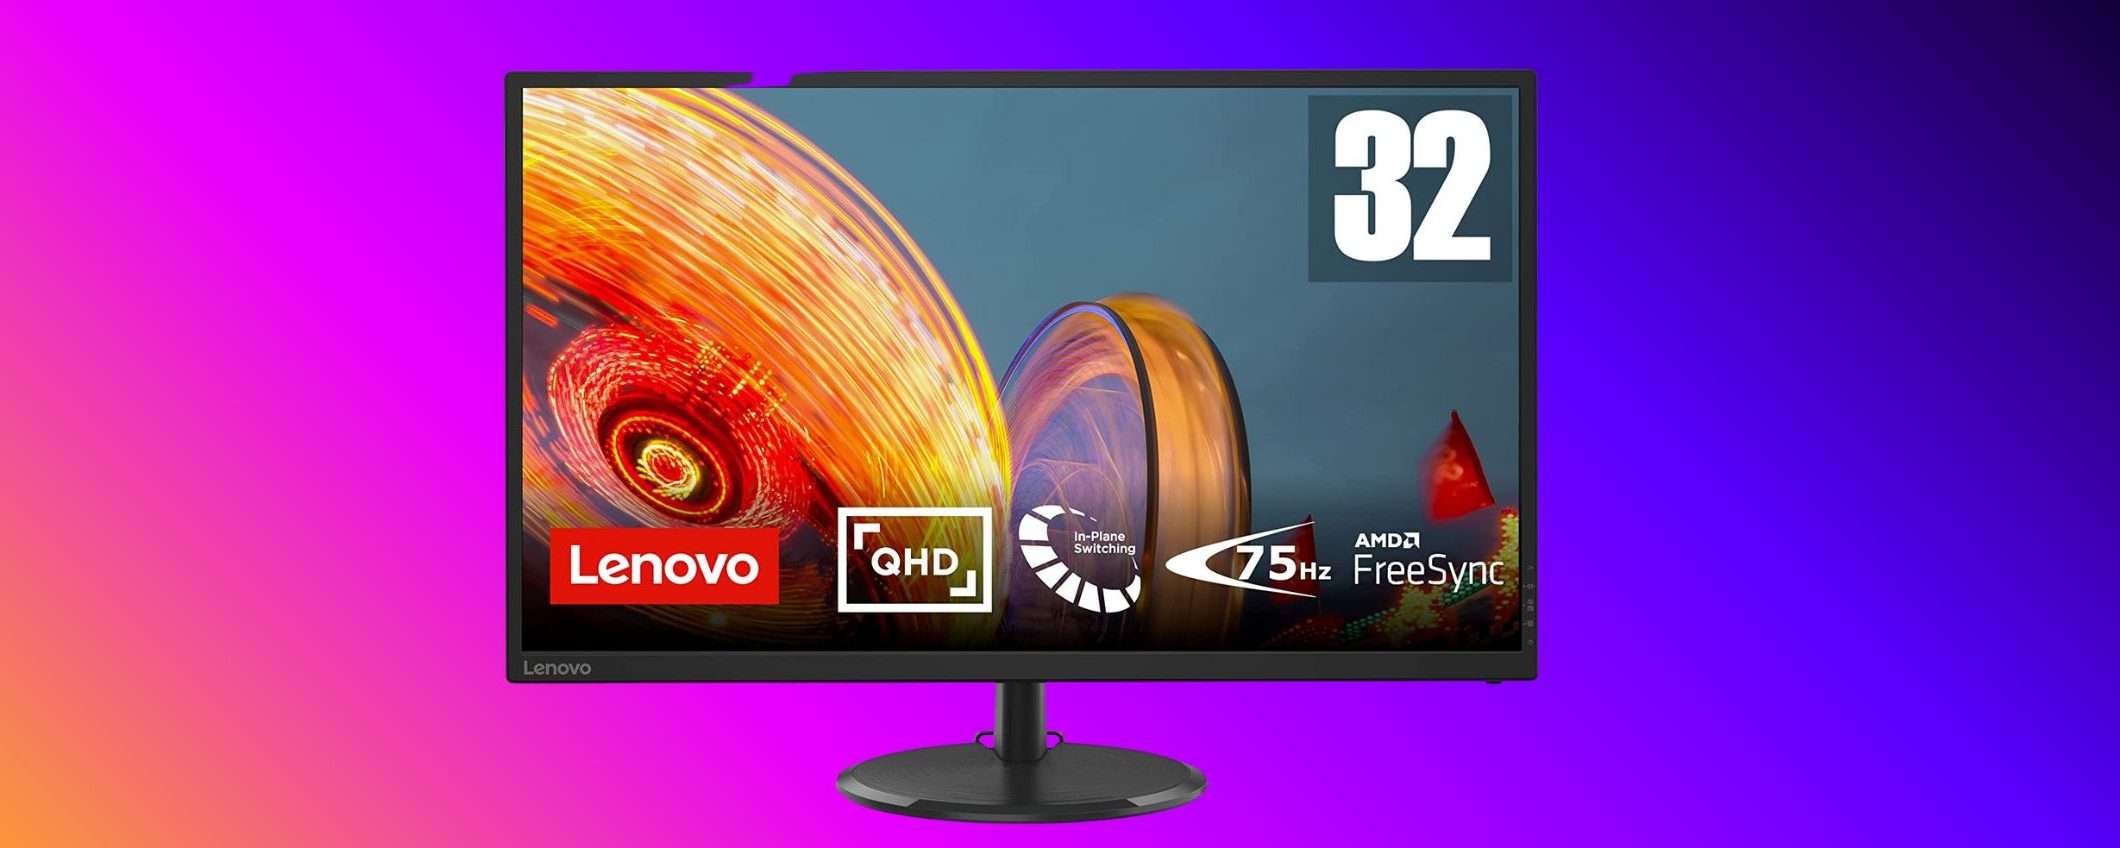 Questo monitor Lenovo da 32 pollici QHD lo paghi meno di 200 euro